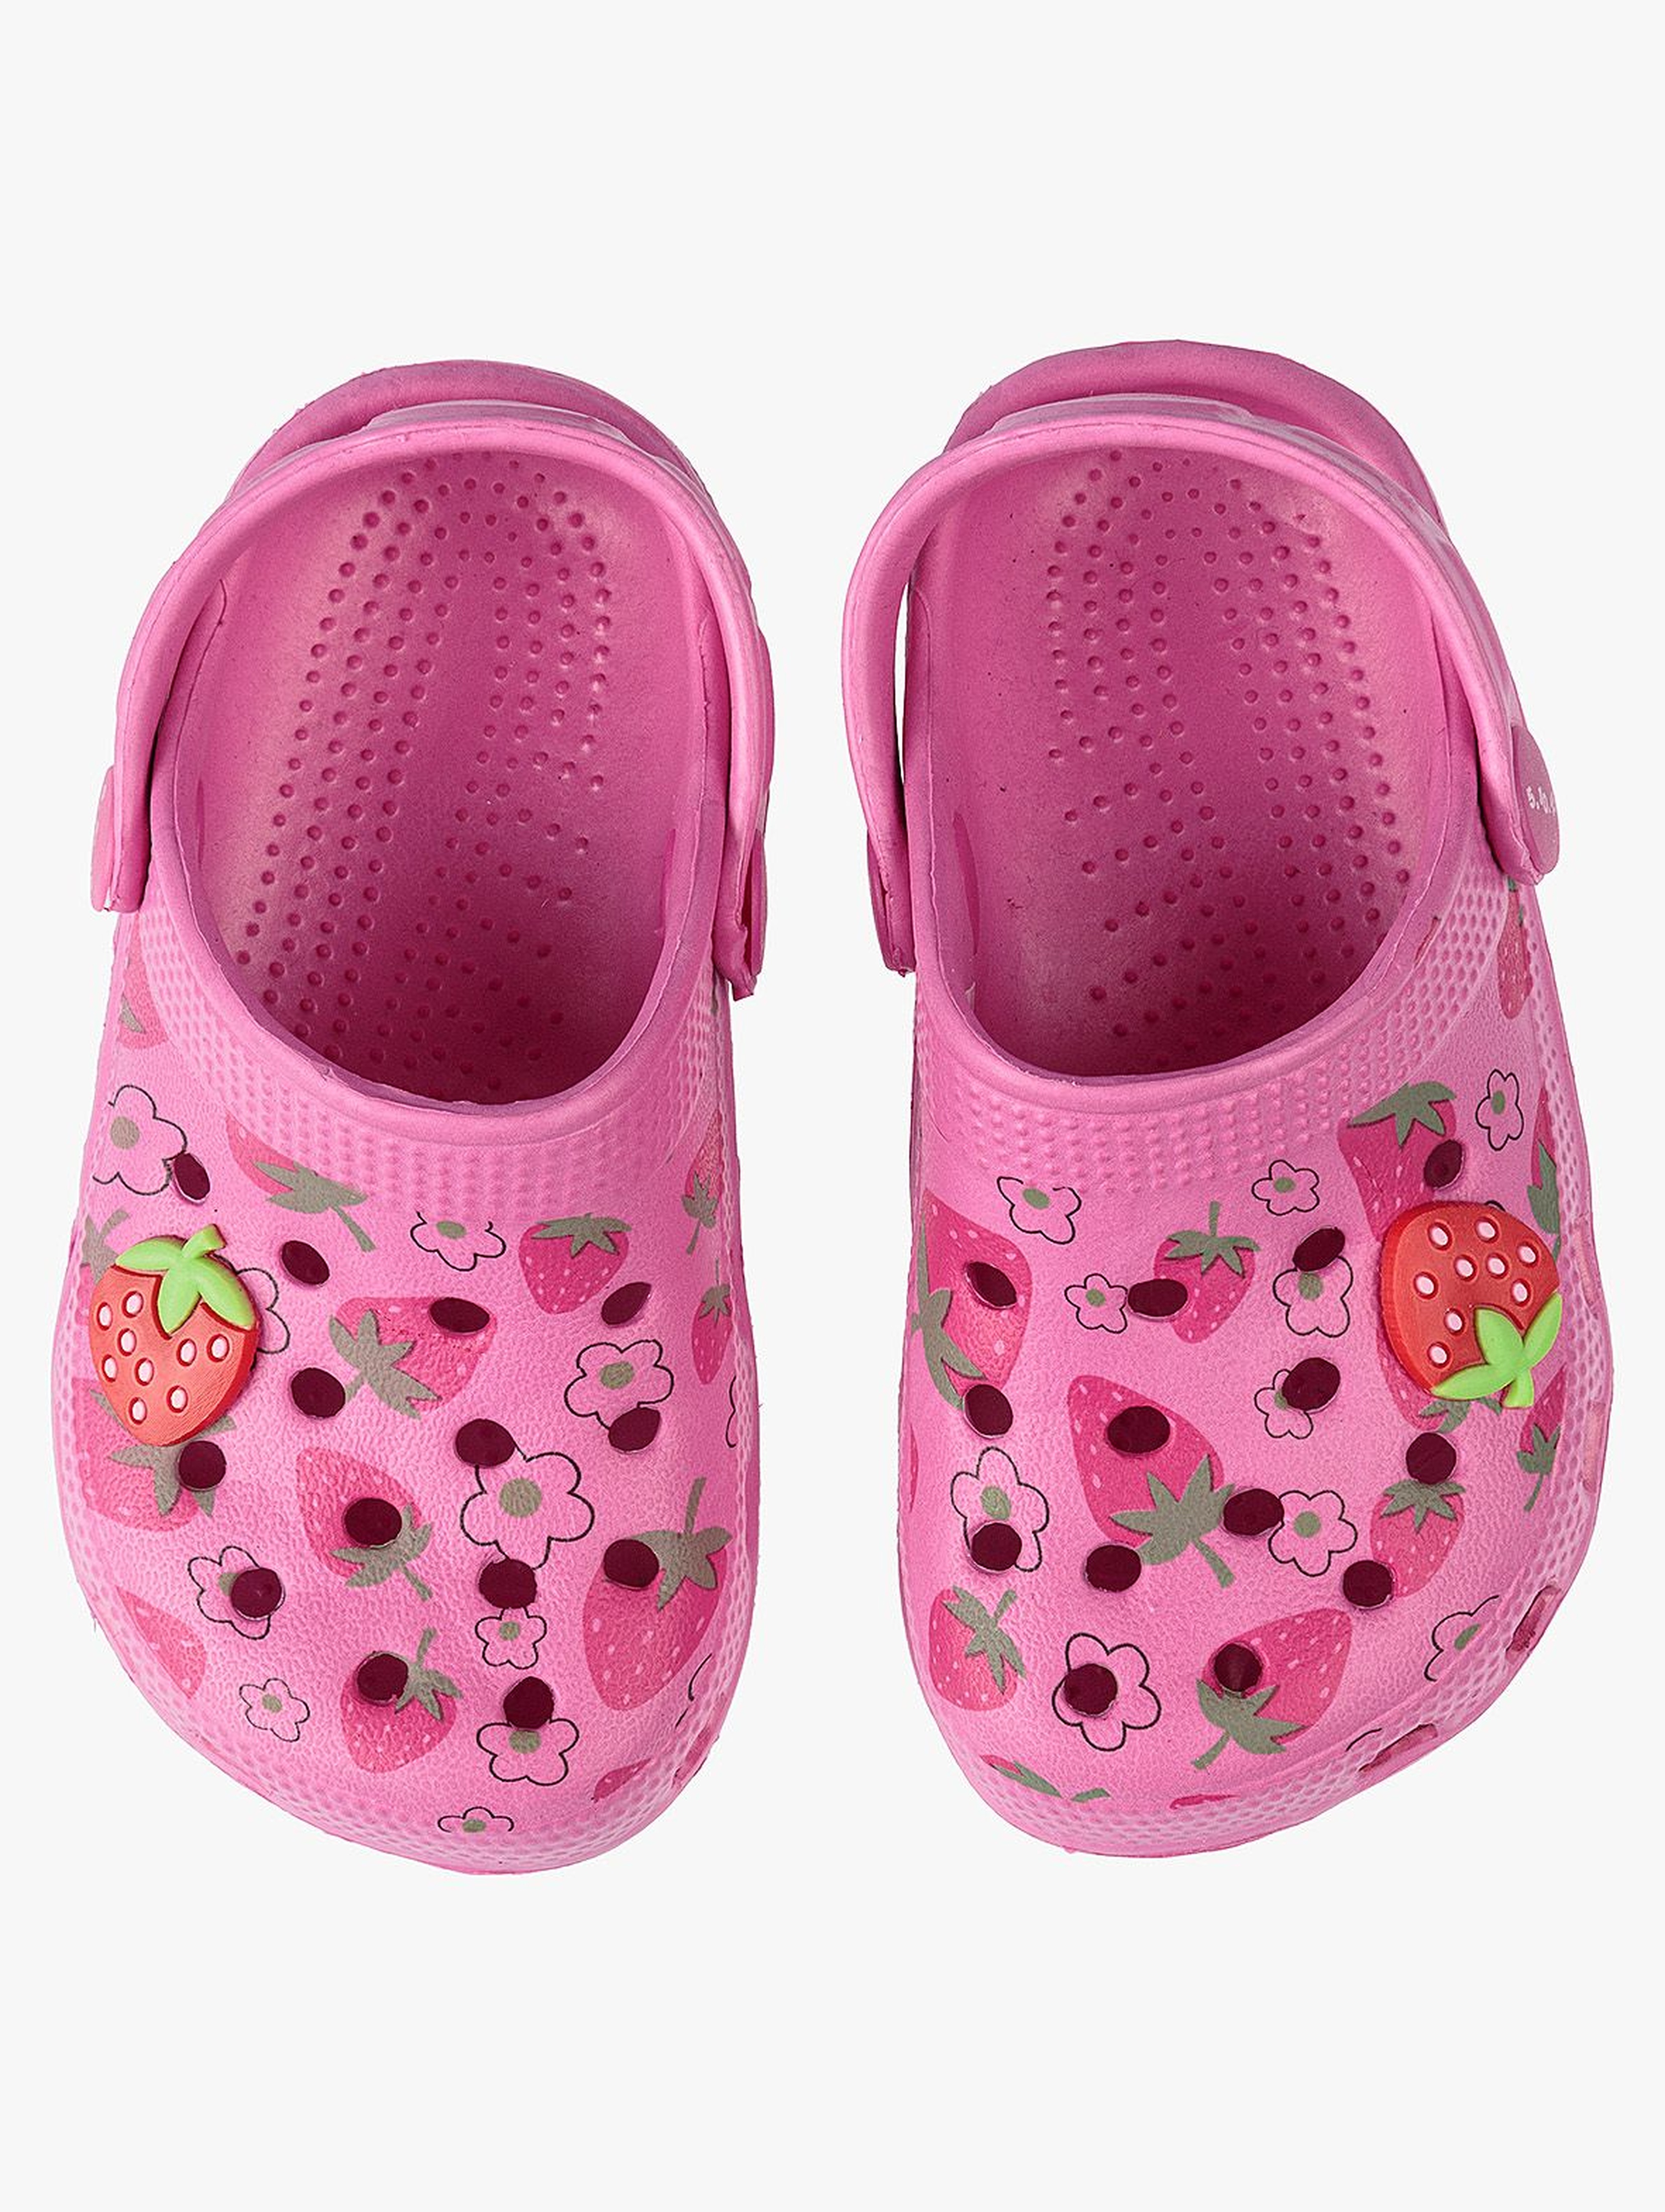 Sandały dziewczęce różowe w truskawki